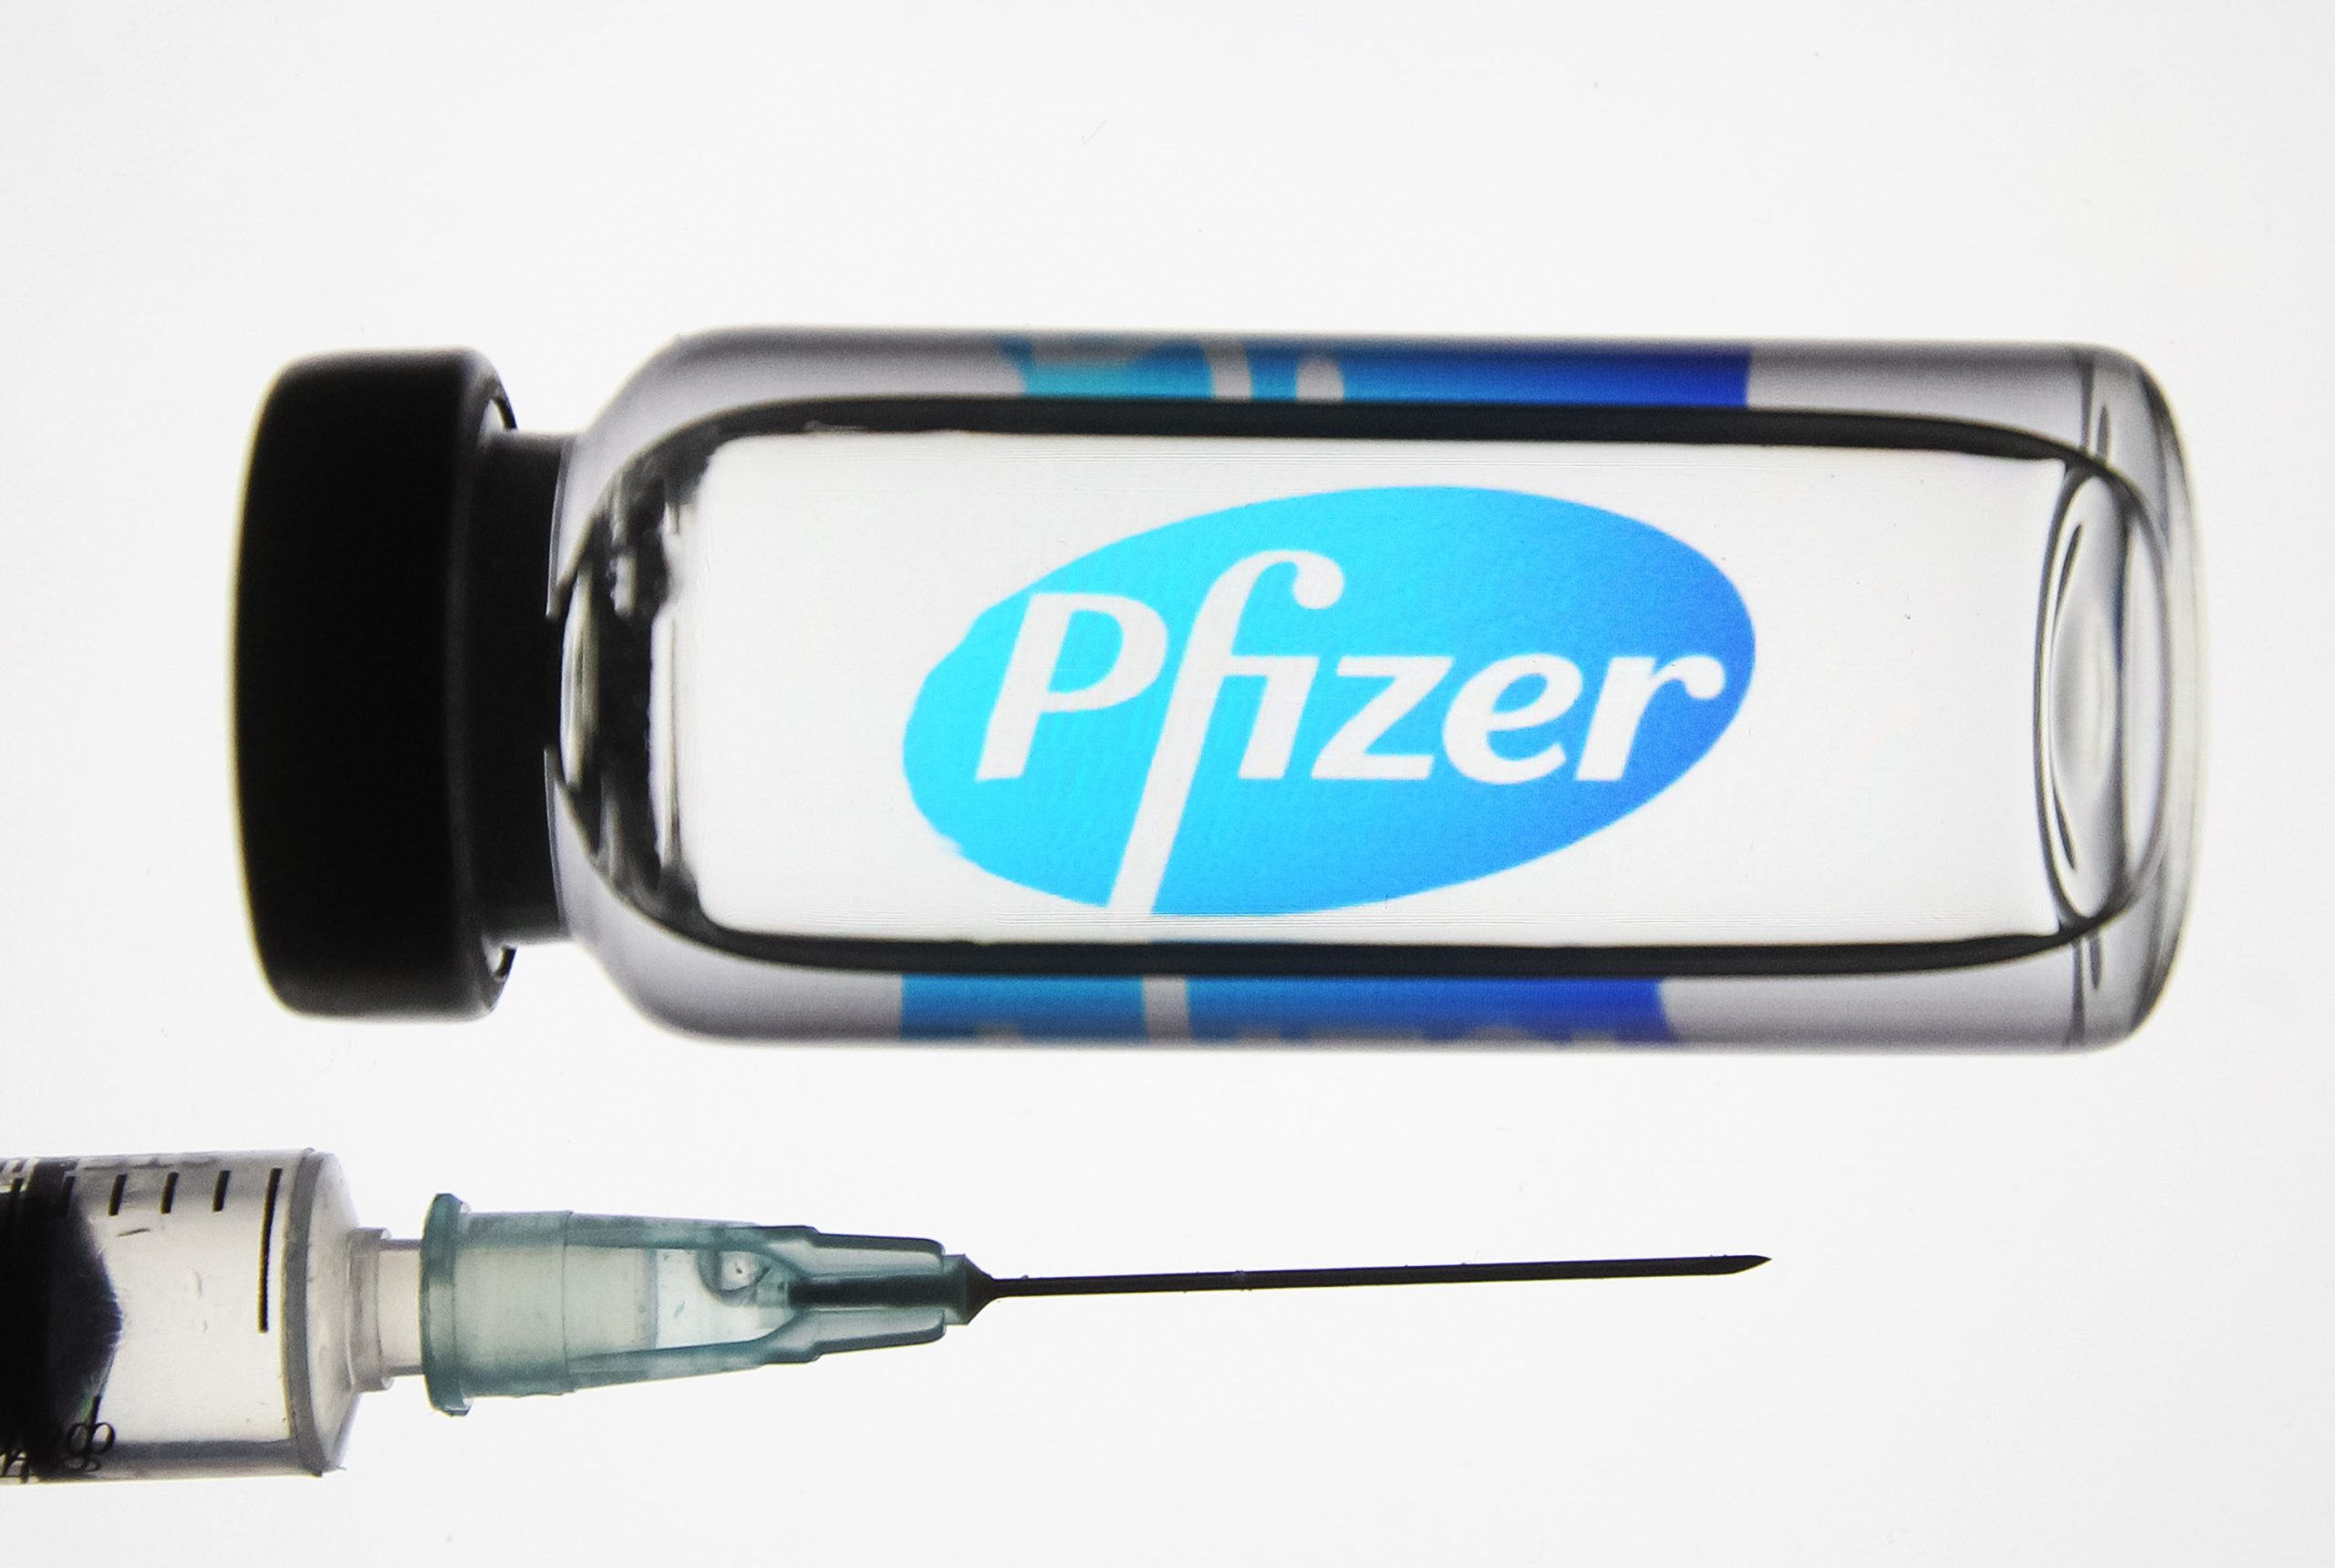 Ιαπωνία: 60χρονη πέθανε από εγκεφαλική αιμορραγία 3 ημέρες αφότου έκανε το εμβόλιο της Pfizer (upd)